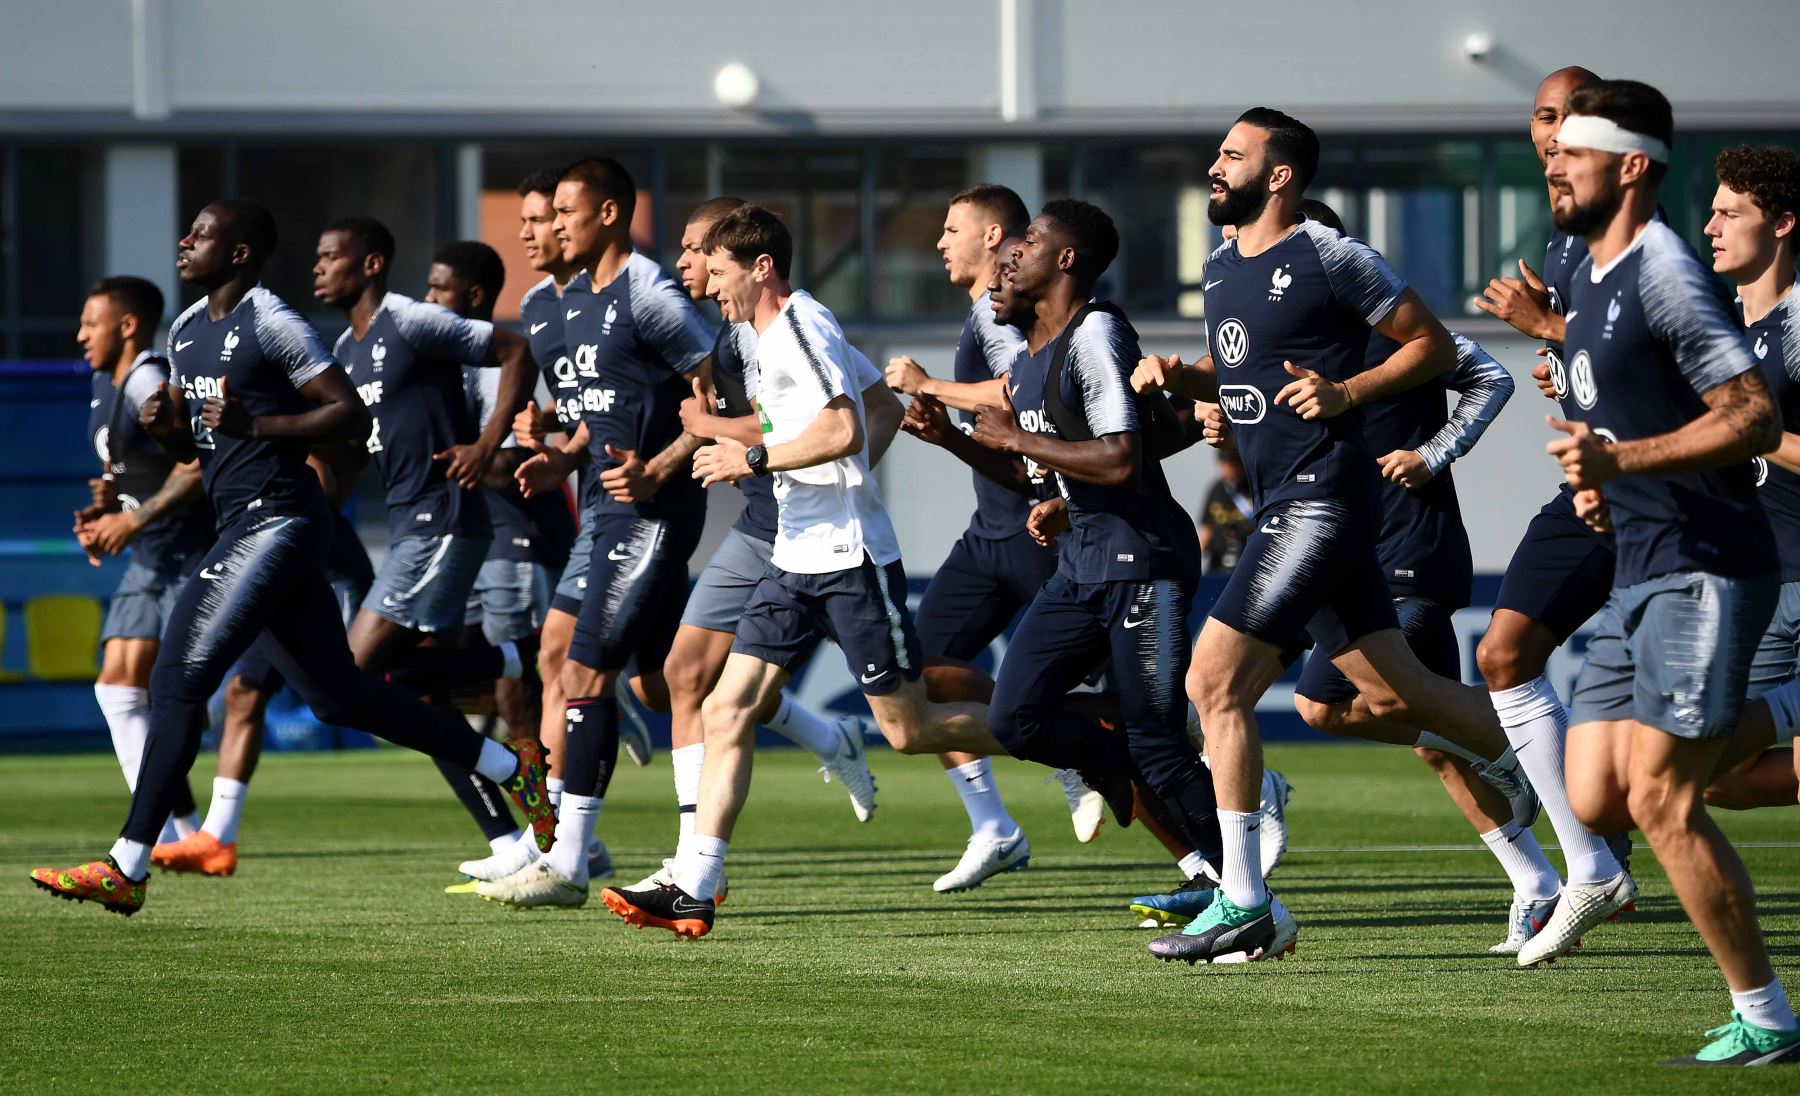 Los jugadores de Francia corren durante una sesión de entrenamiento en el estadio Glebovets en Istra, al oeste de Moscú, antes del partido de fútbol del Grupo C de la Copa Mundial Rusia 2018 contra Perú. Foto: AFP